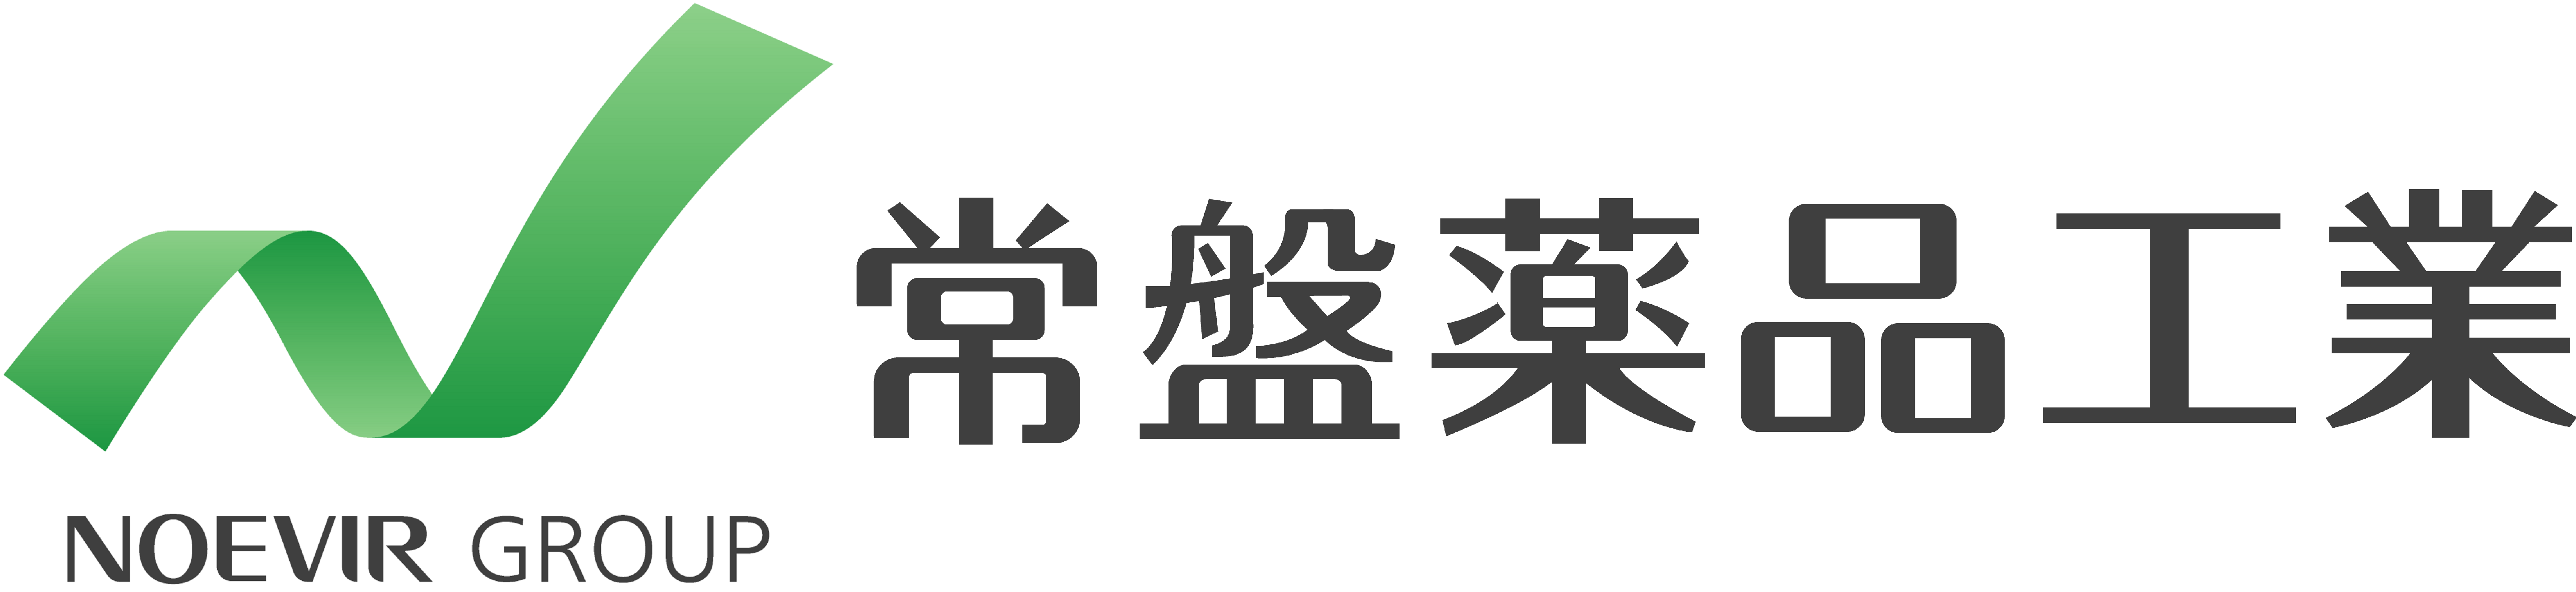 tokiwayakuhin_logo.png